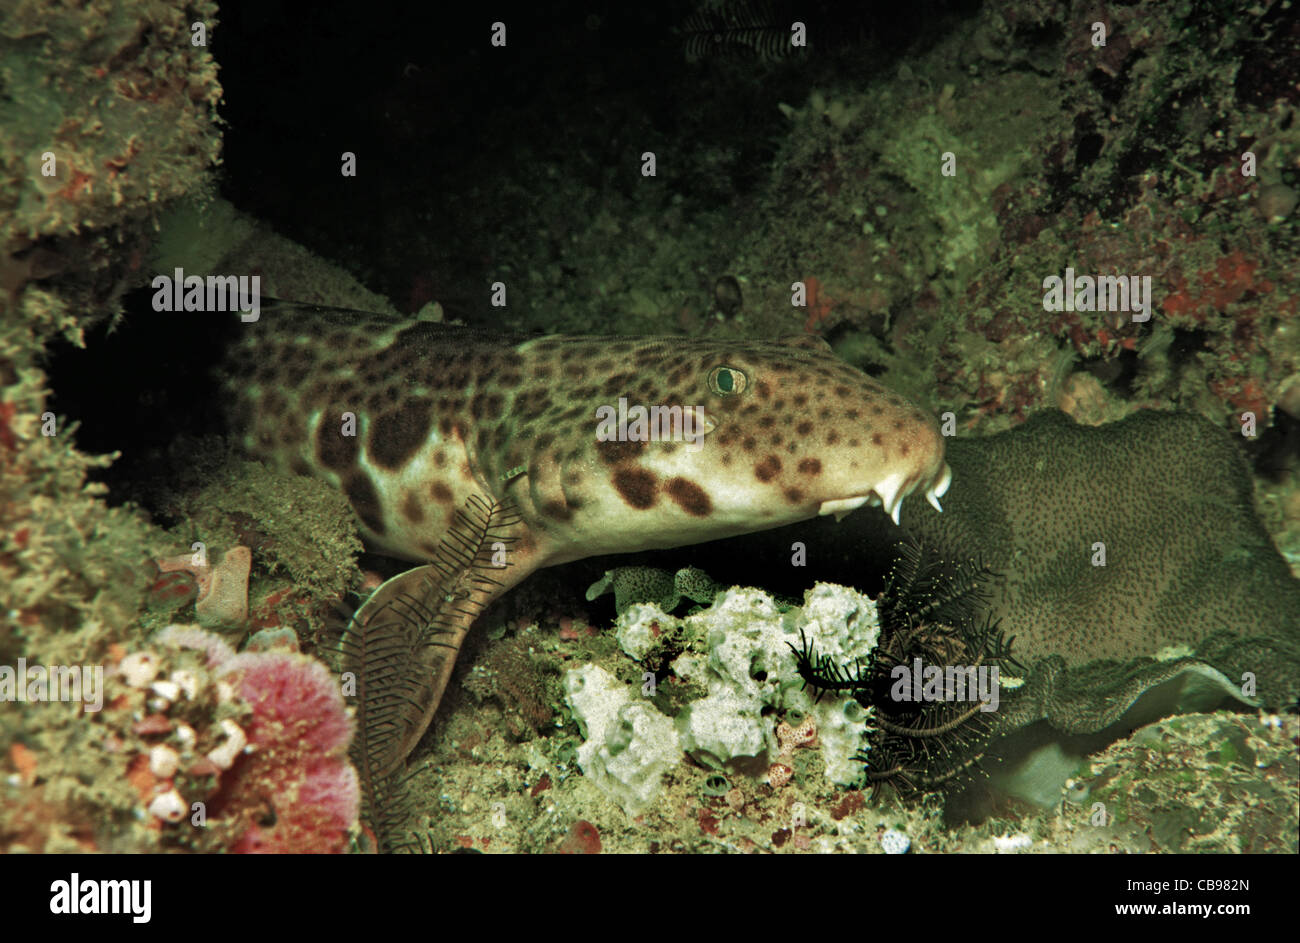 Triton epaulette shark, Henrys epaulette shark (Hemiscyllium henryi),  at coral reef, IUCN red list, Irian Jaya, New Guinea, Indonesia, Asia Stock Photo